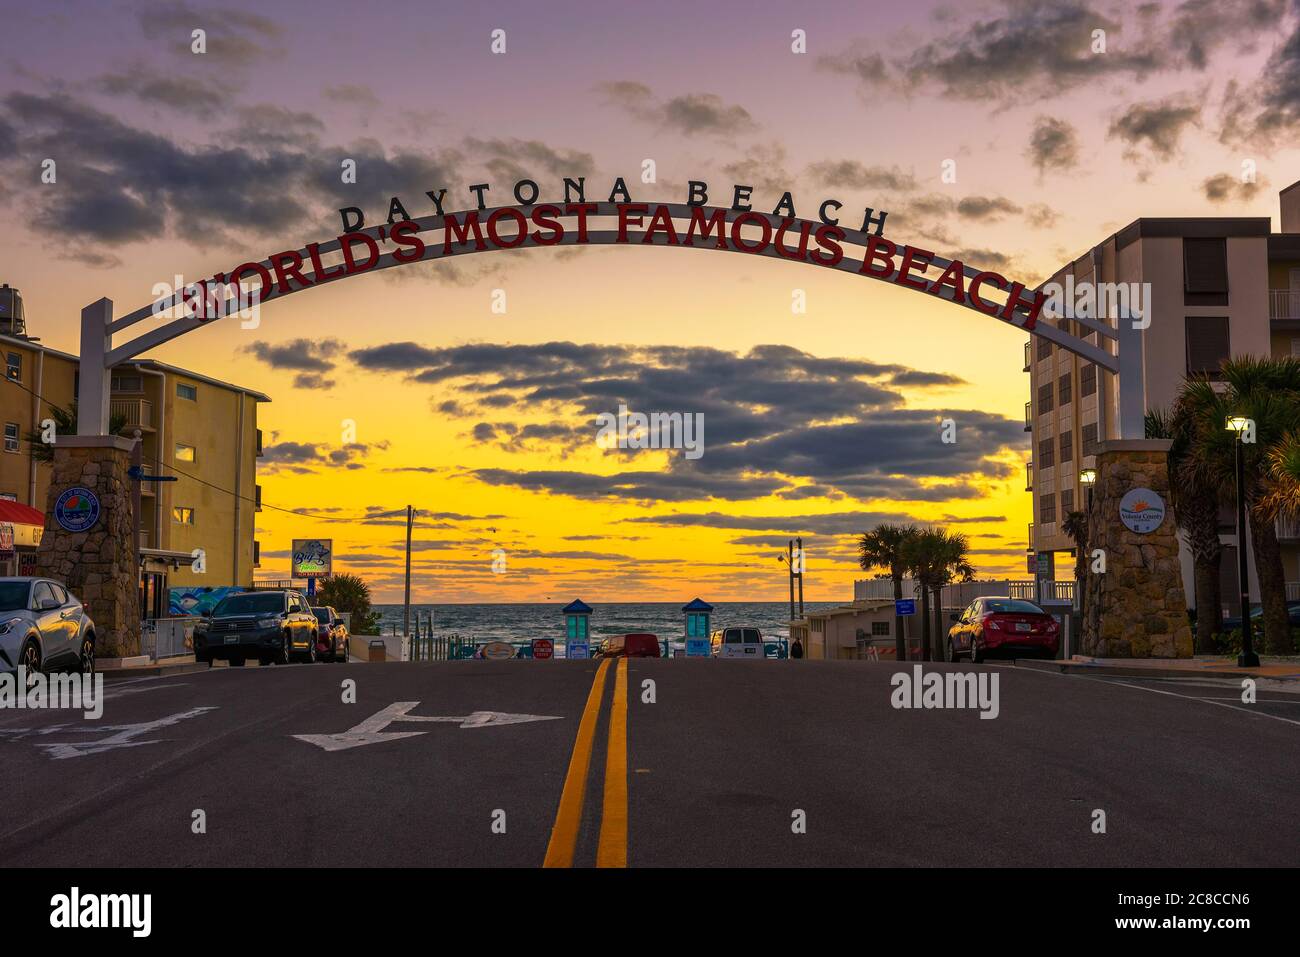 Daytona Beach, Florida, USA - 9. Januar 2020 : Daytona Beach Willkommensschild gestreckt über die Straße bei Sonnenaufgang. Daytona ist als die Welt Mos bekannt Stockfoto